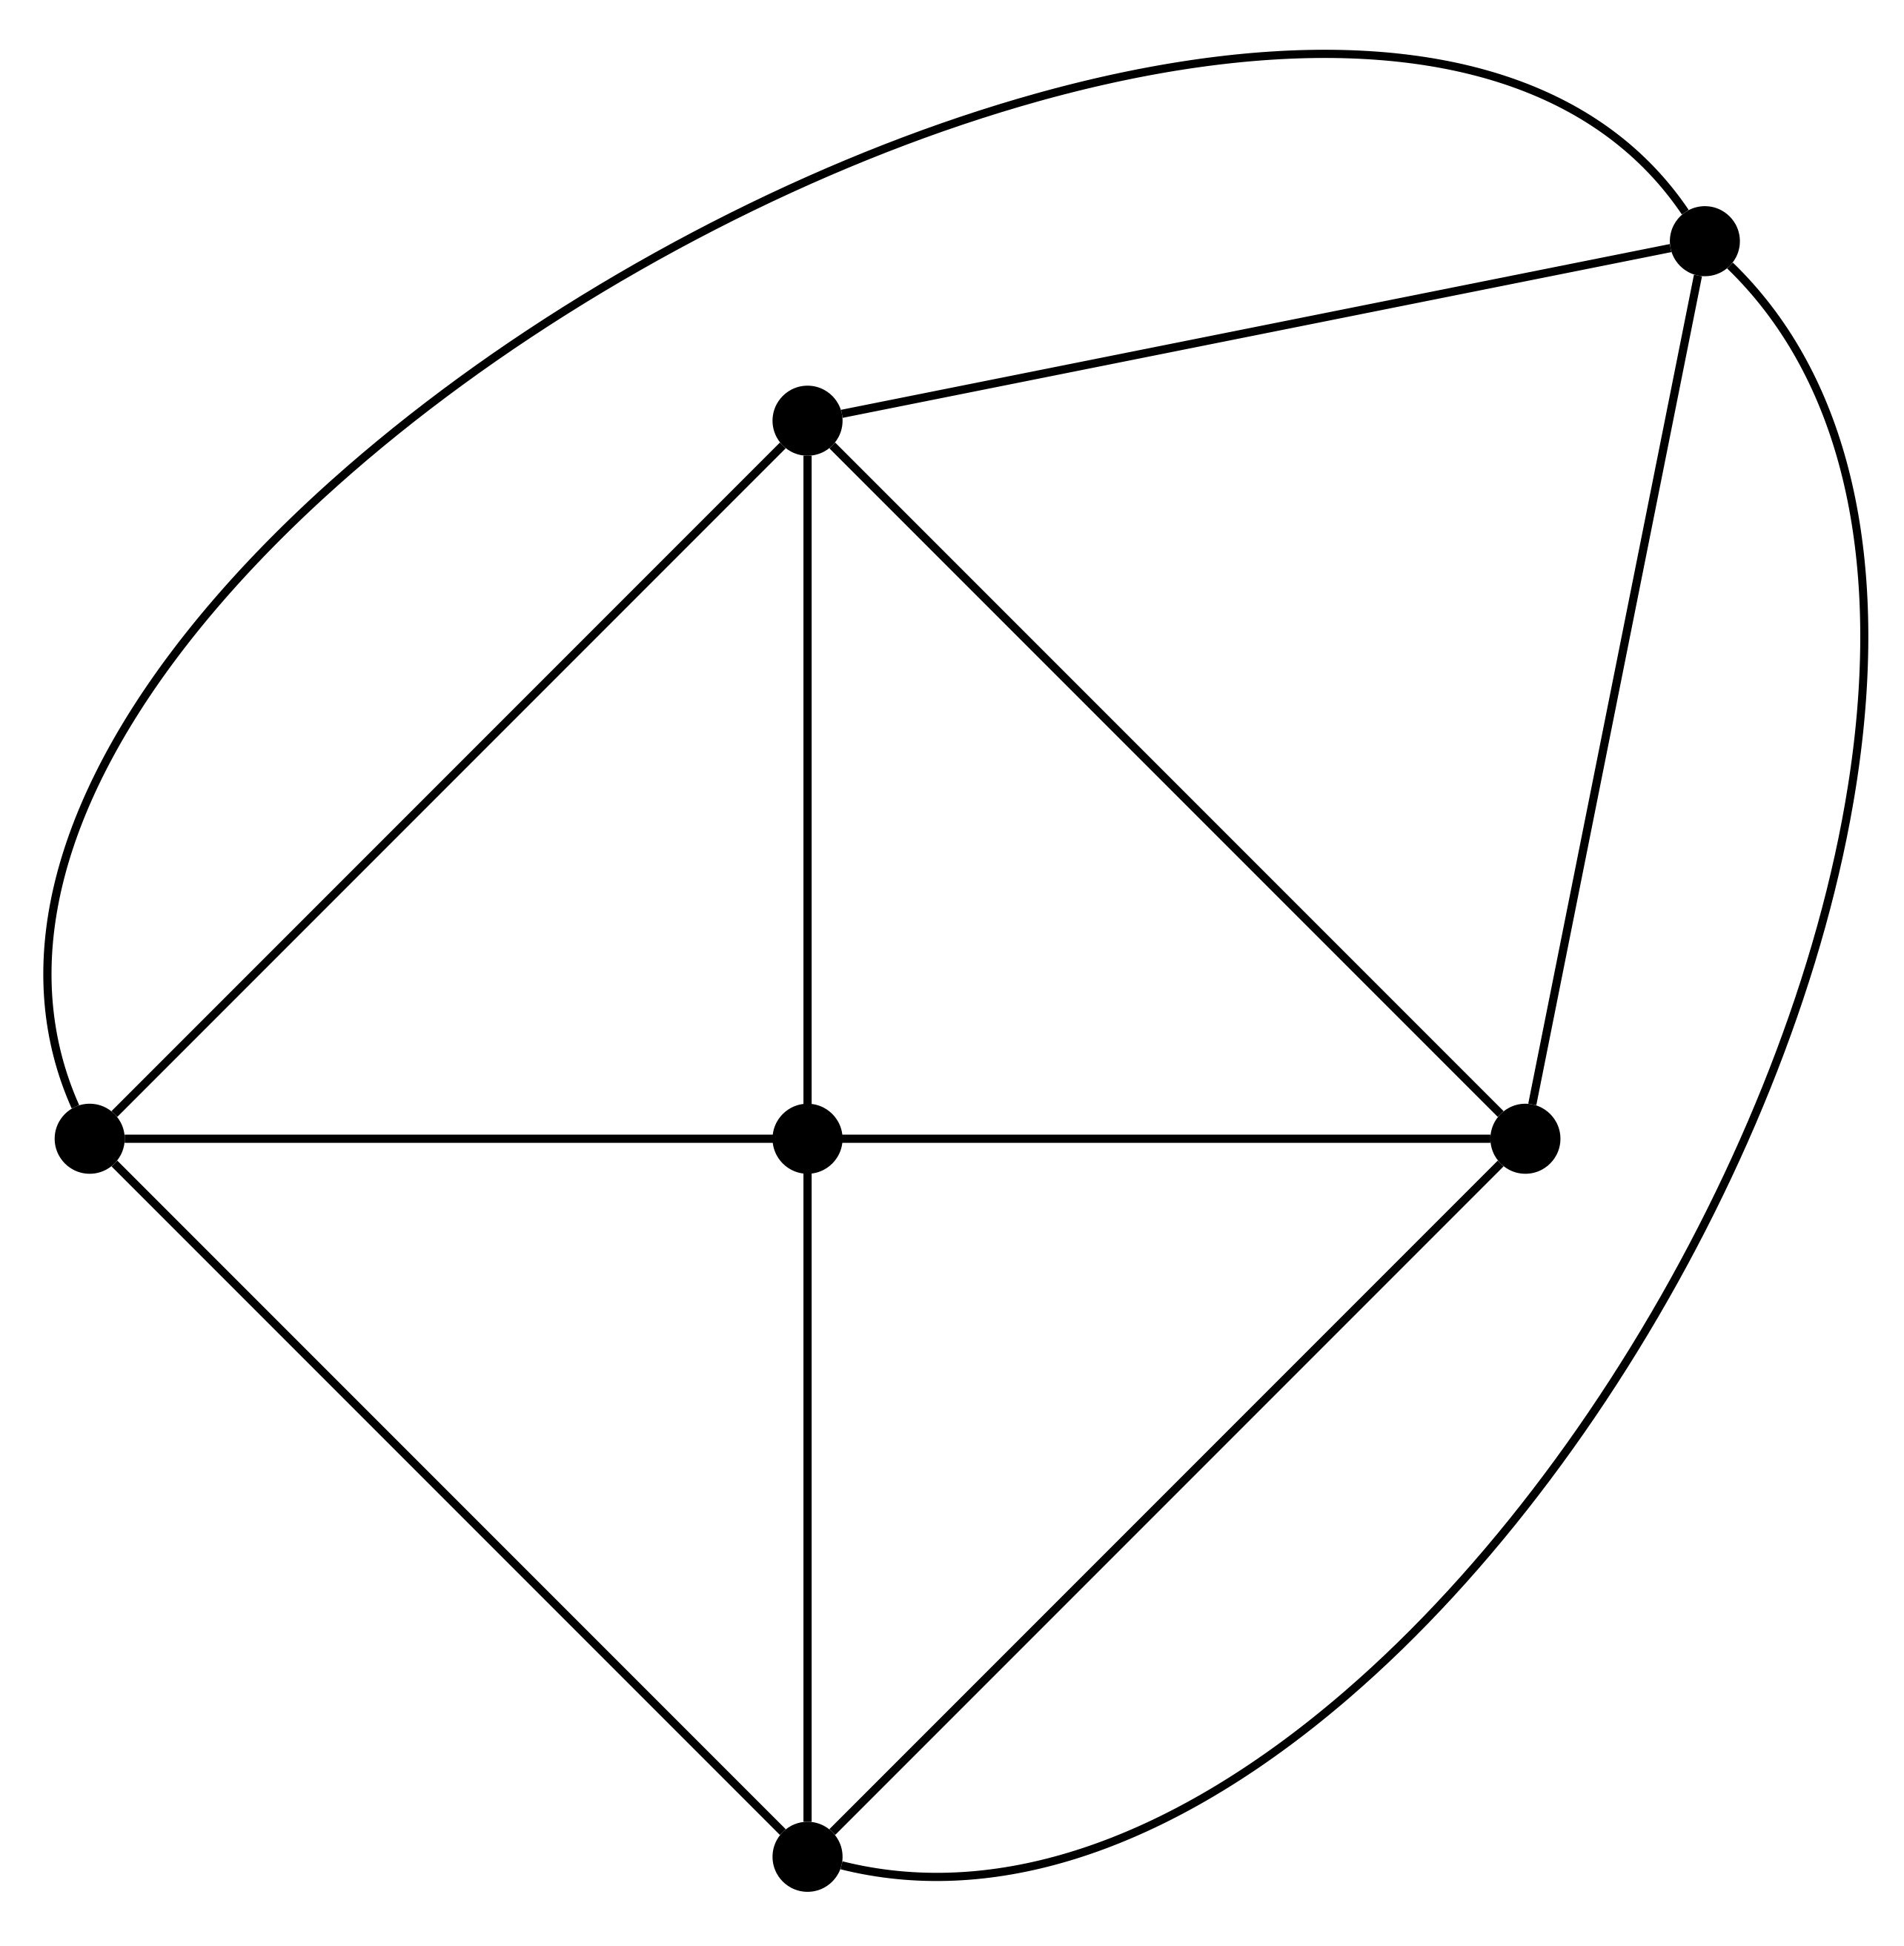 6 vertex planar graph with 12 edges. Each vertex has degree 4.